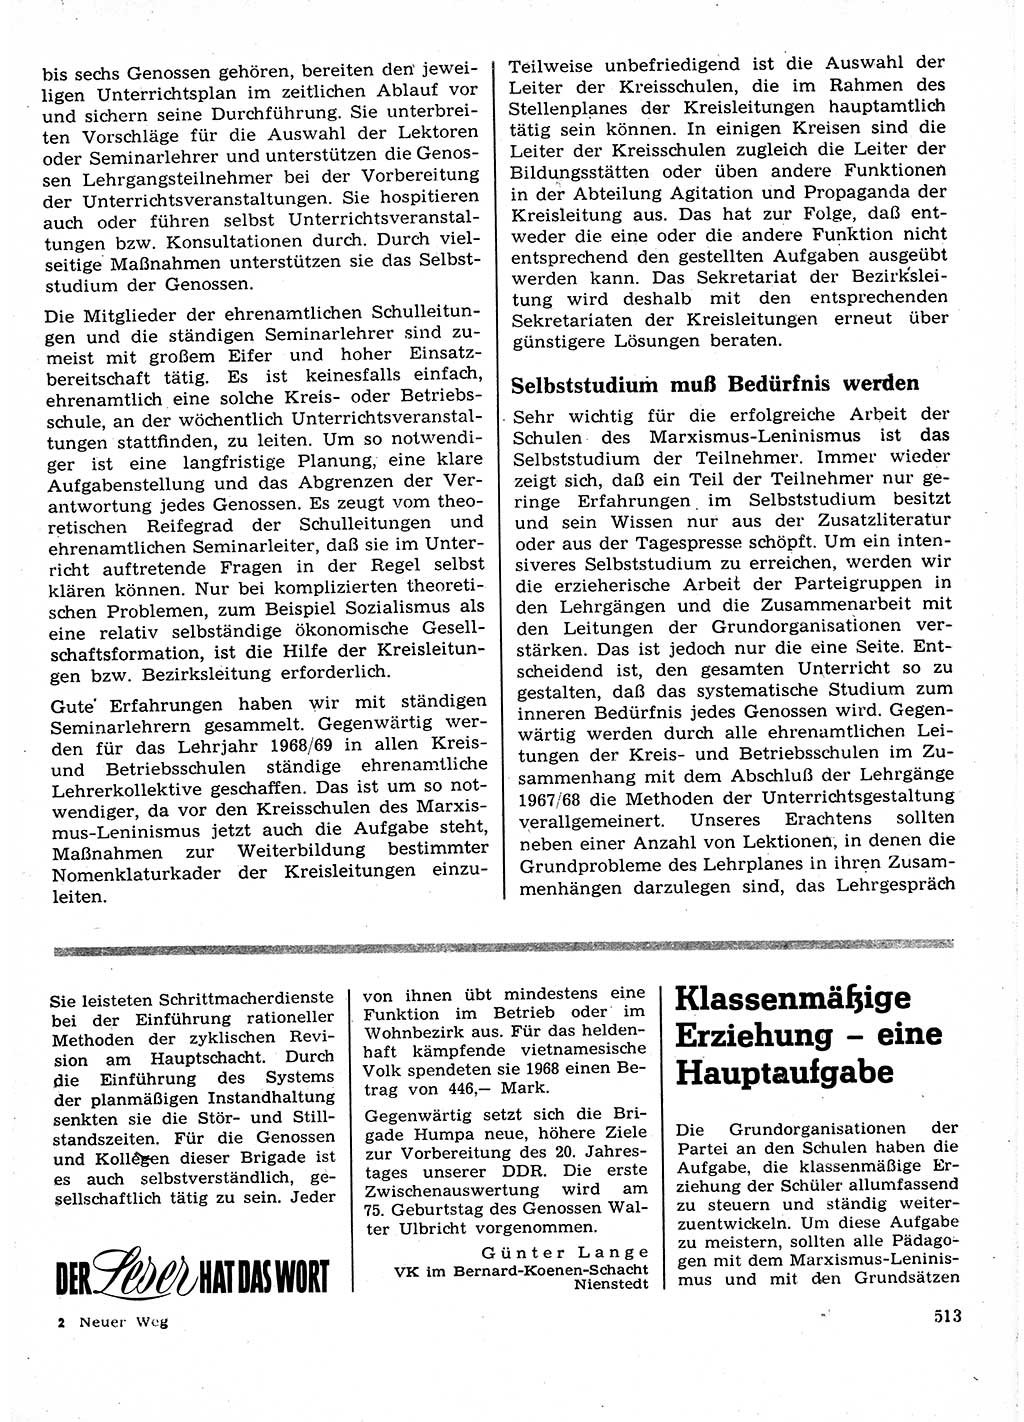 Neuer Weg (NW), Organ des Zentralkomitees (ZK) der SED (Sozialistische Einheitspartei Deutschlands) für Fragen des Parteilebens, 23. Jahrgang [Deutsche Demokratische Republik (DDR)] 1968, Seite 513 (NW ZK SED DDR 1968, S. 513)